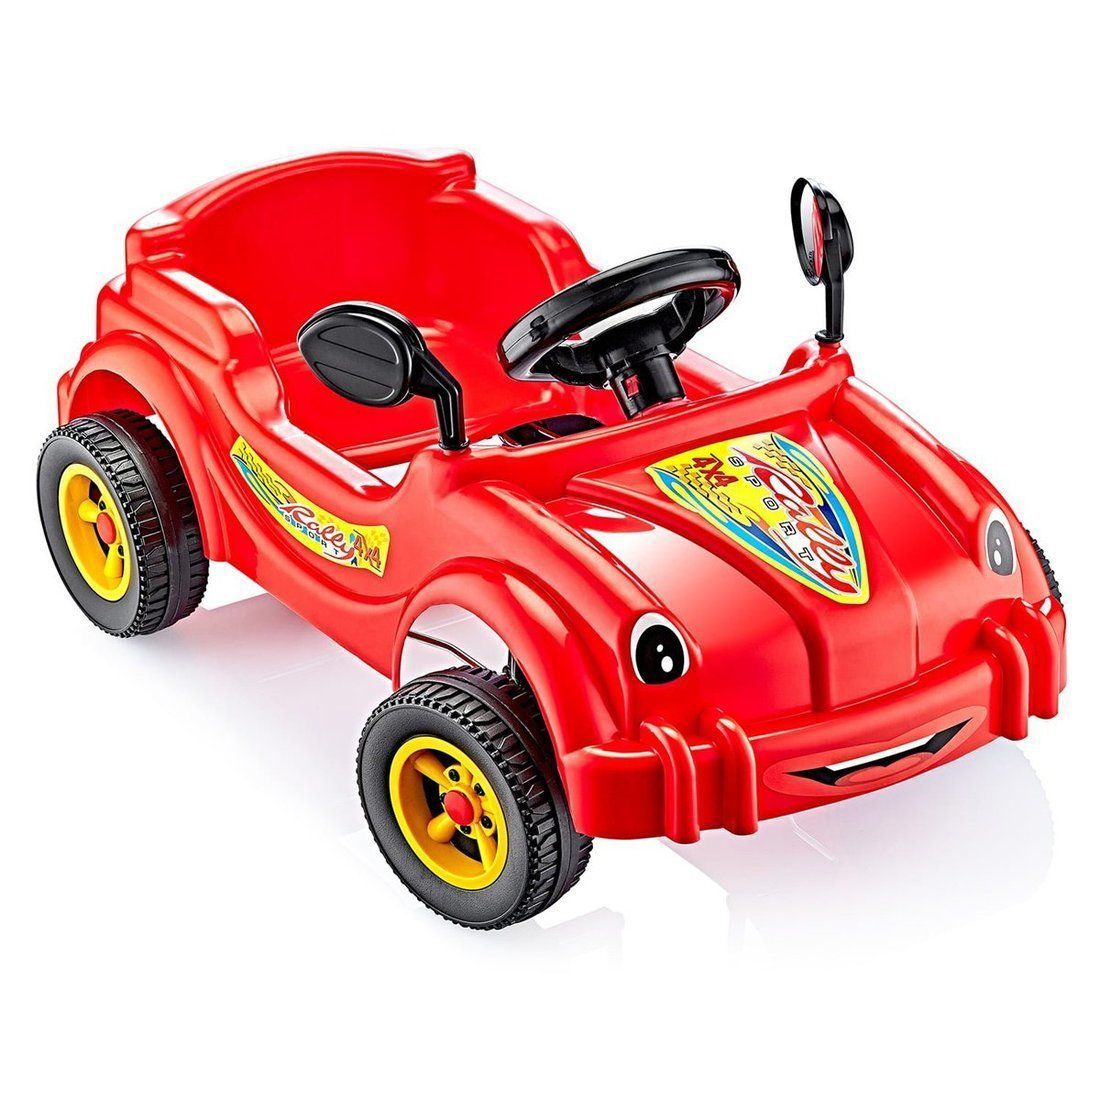 Машина педальная Cool Riders, с клаксоном, красная машина каталка педальная cool riders с клаксоном красный